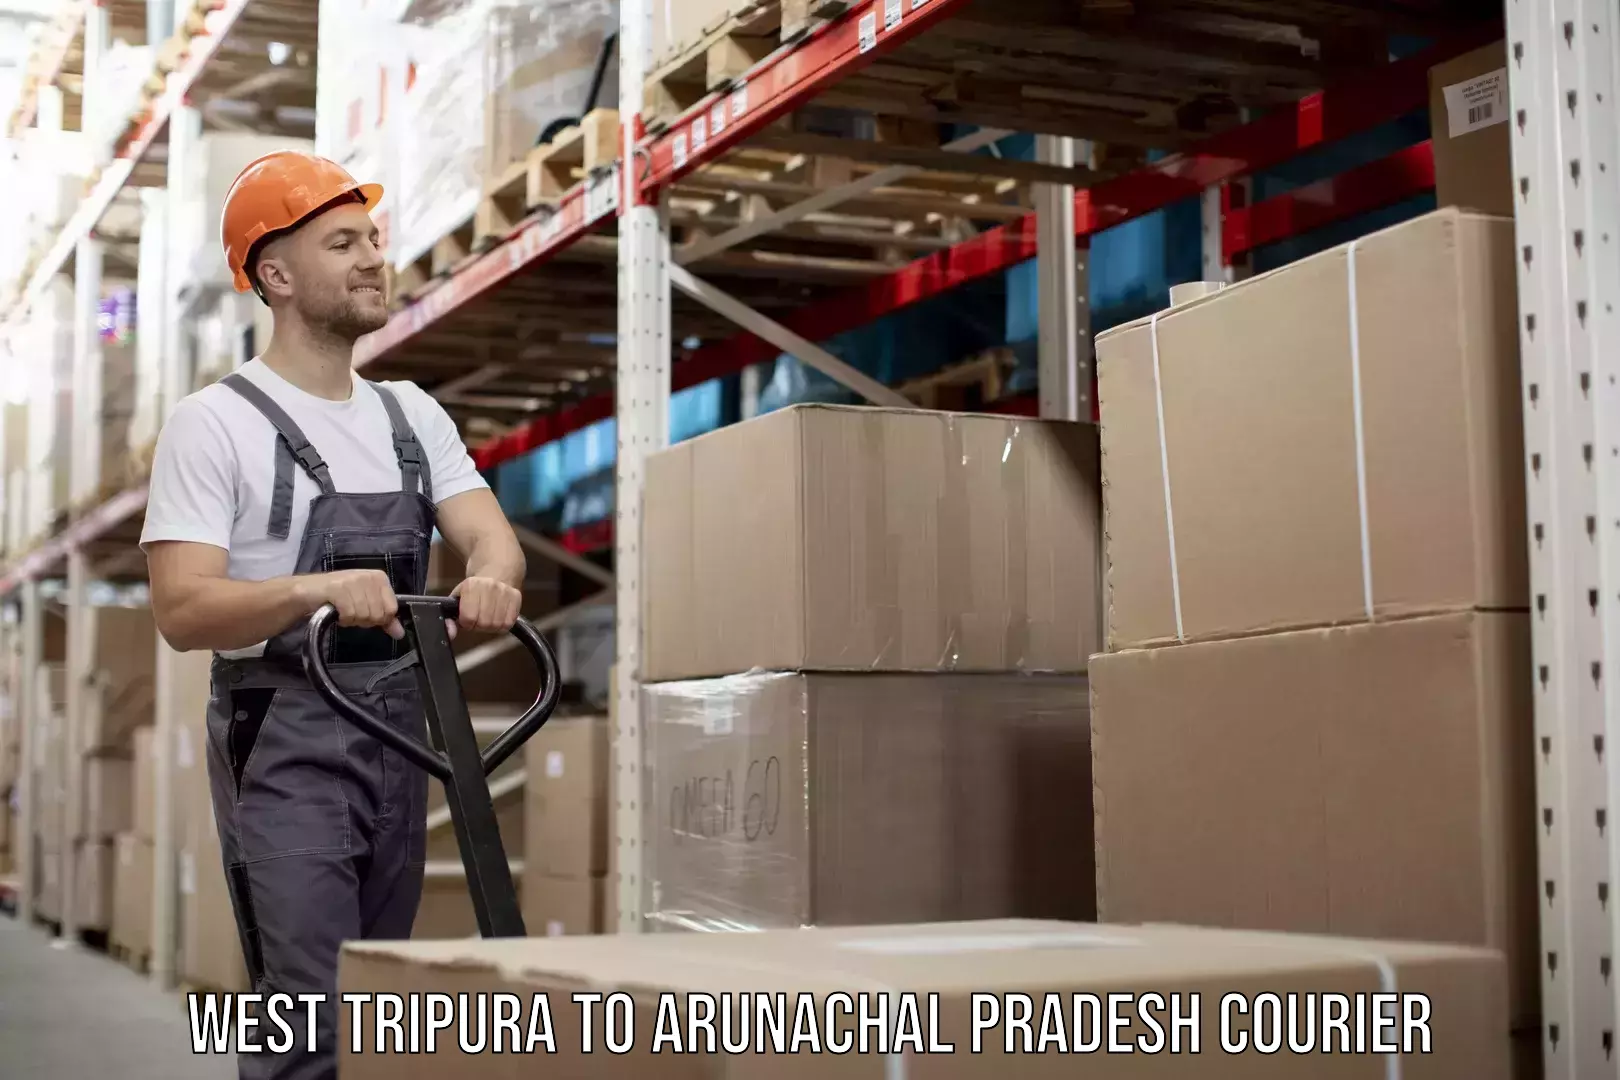 Dynamic courier services West Tripura to Arunachal Pradesh